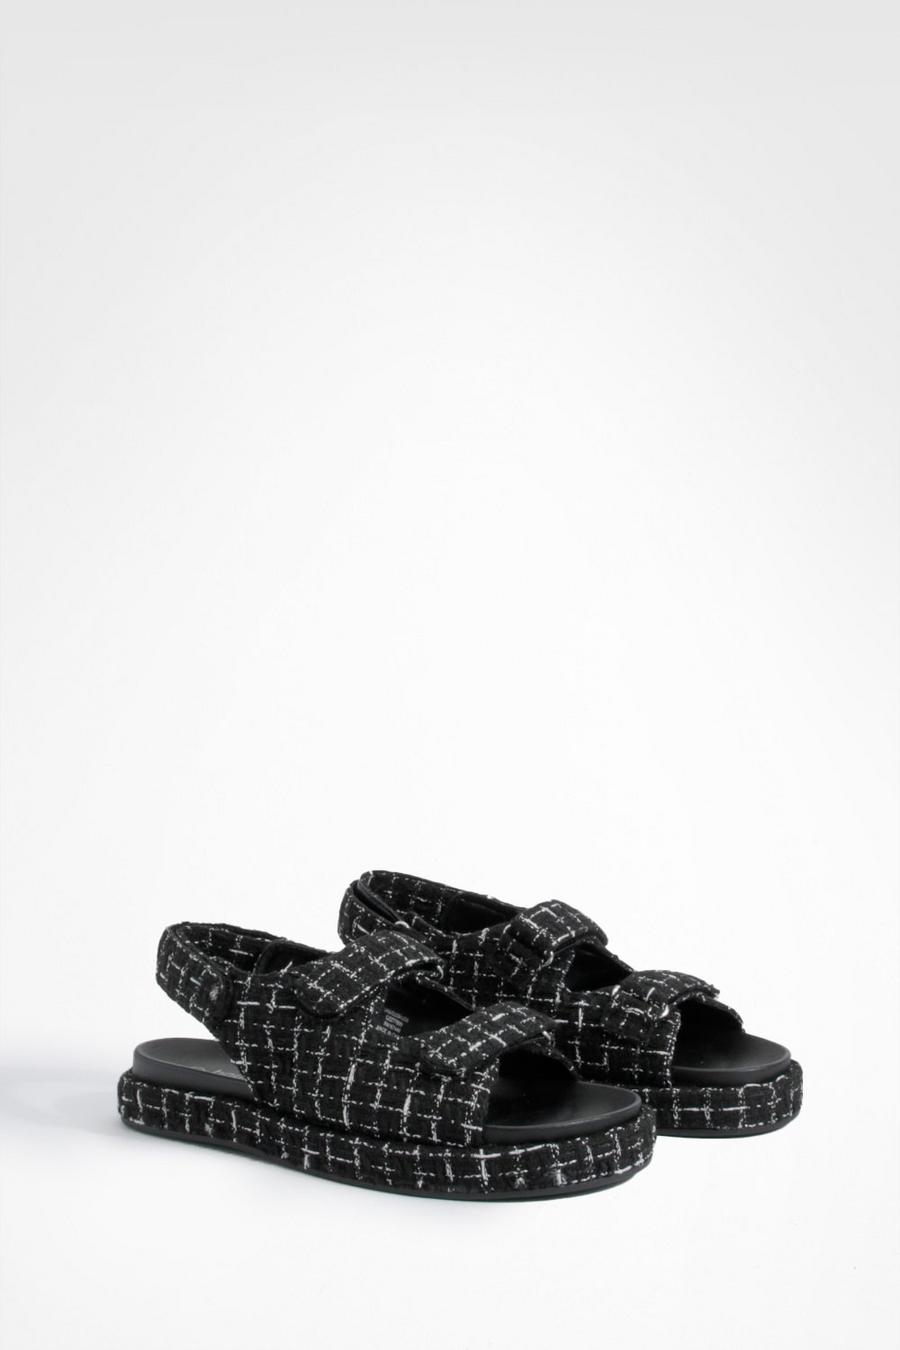 Sandali a calzata ampia in bouclé con lucchetto, Black